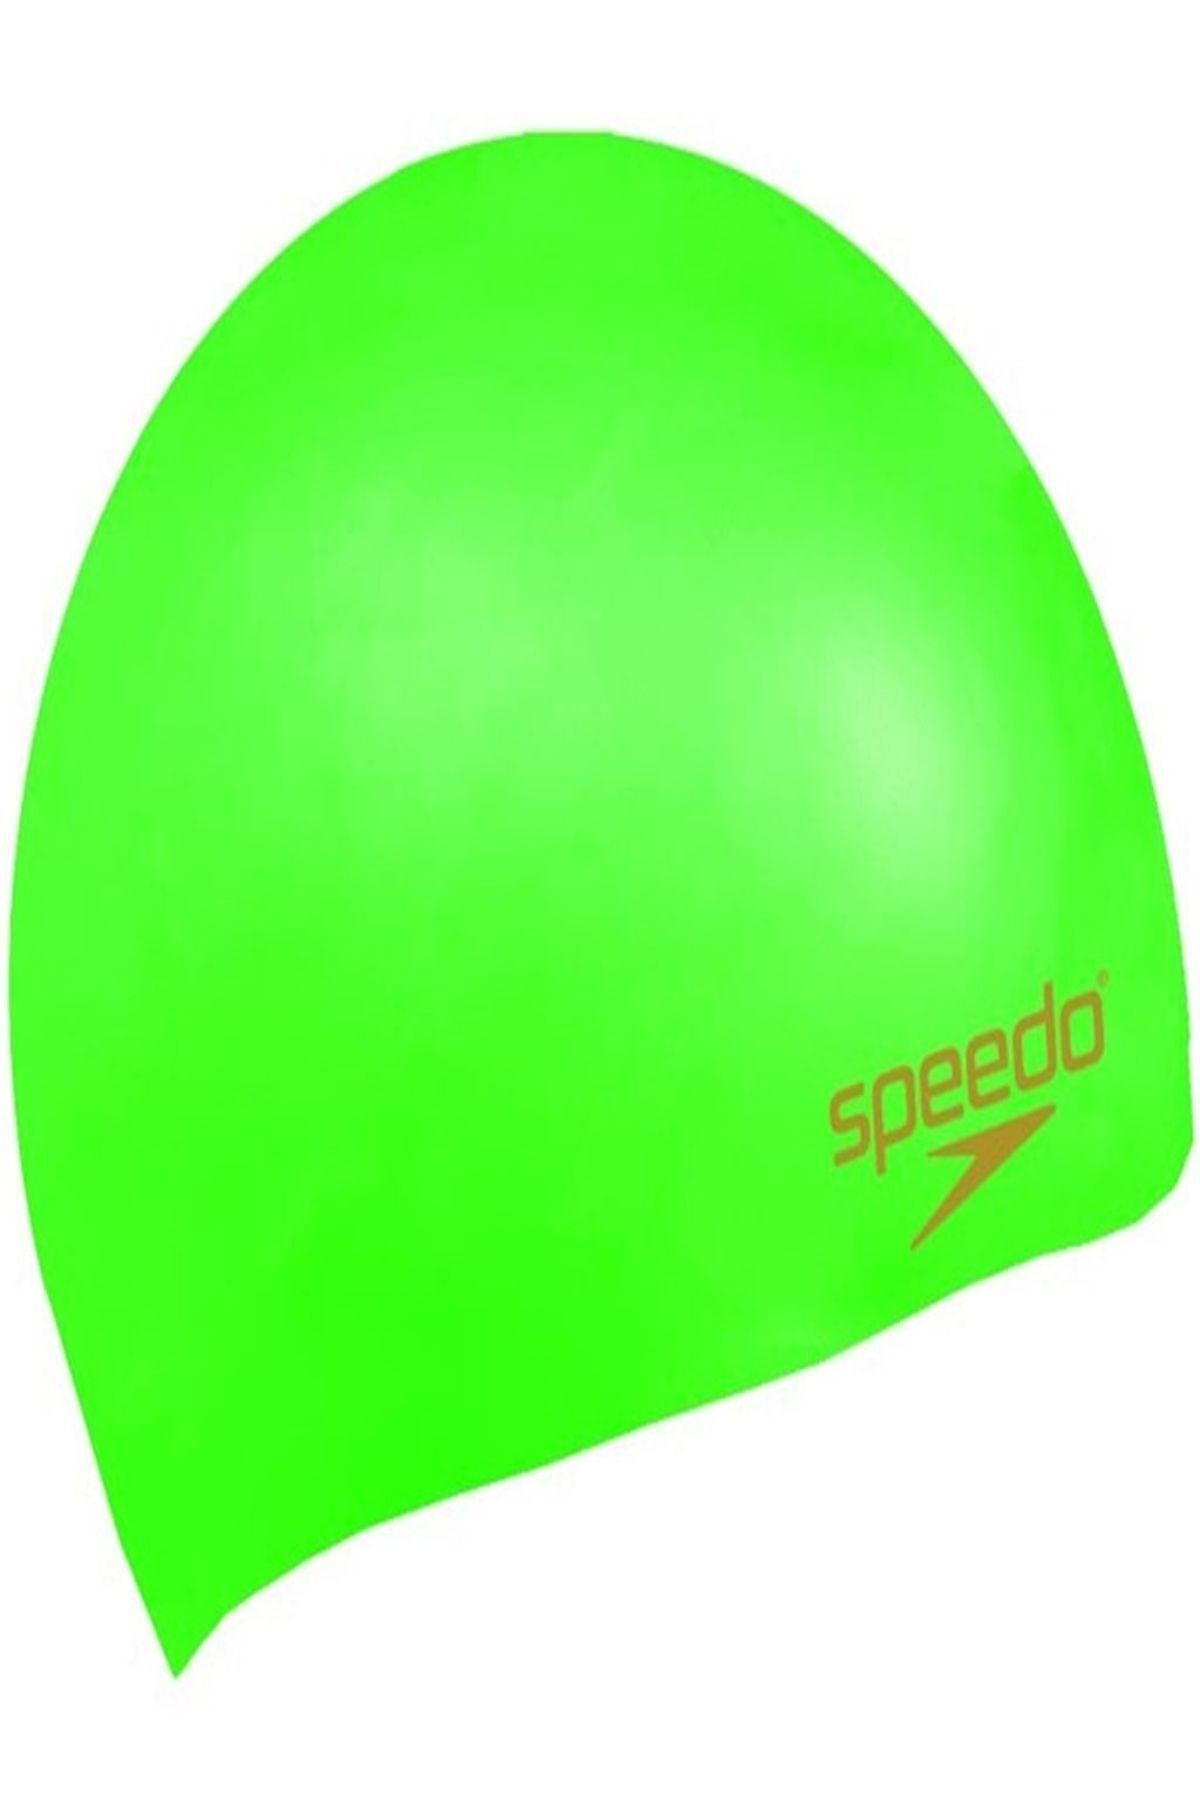 SPEEDO Silikon Yüzücü Bonesi - Yeşil/Altın